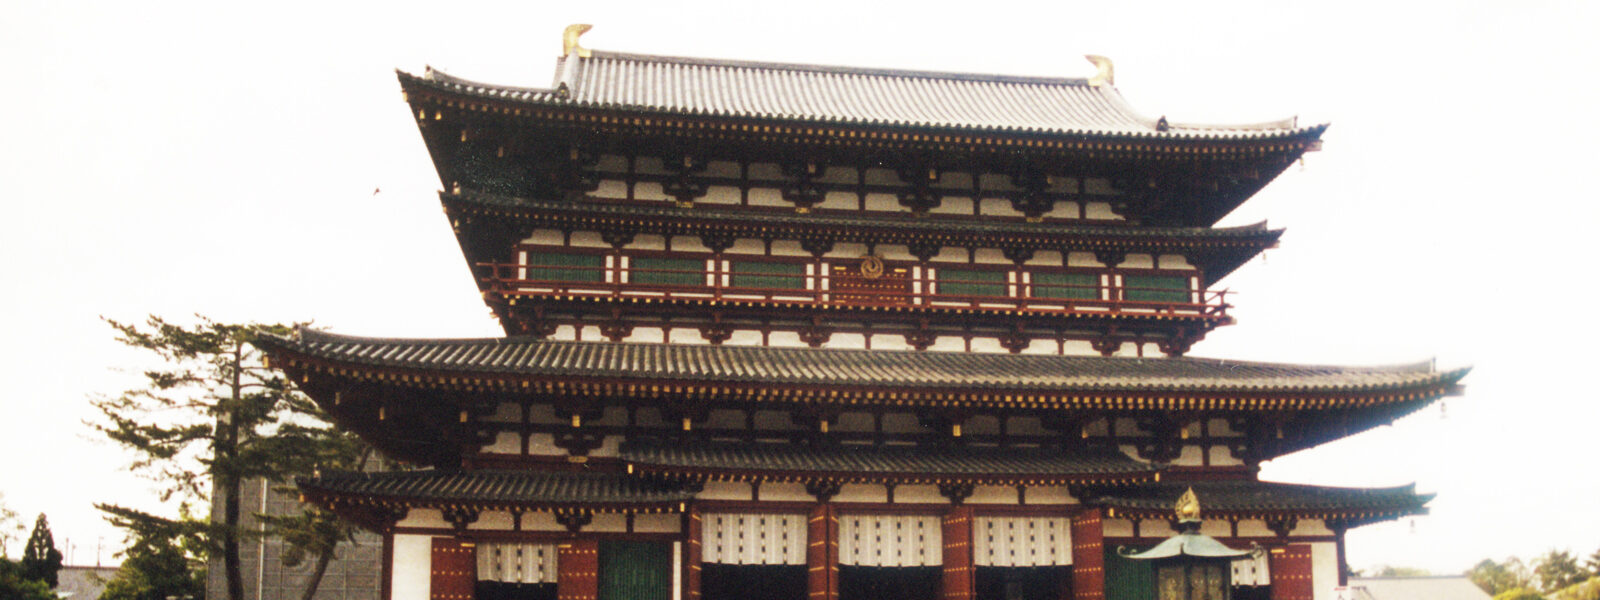 日本奈良藥師寺 Yakushiji Temple